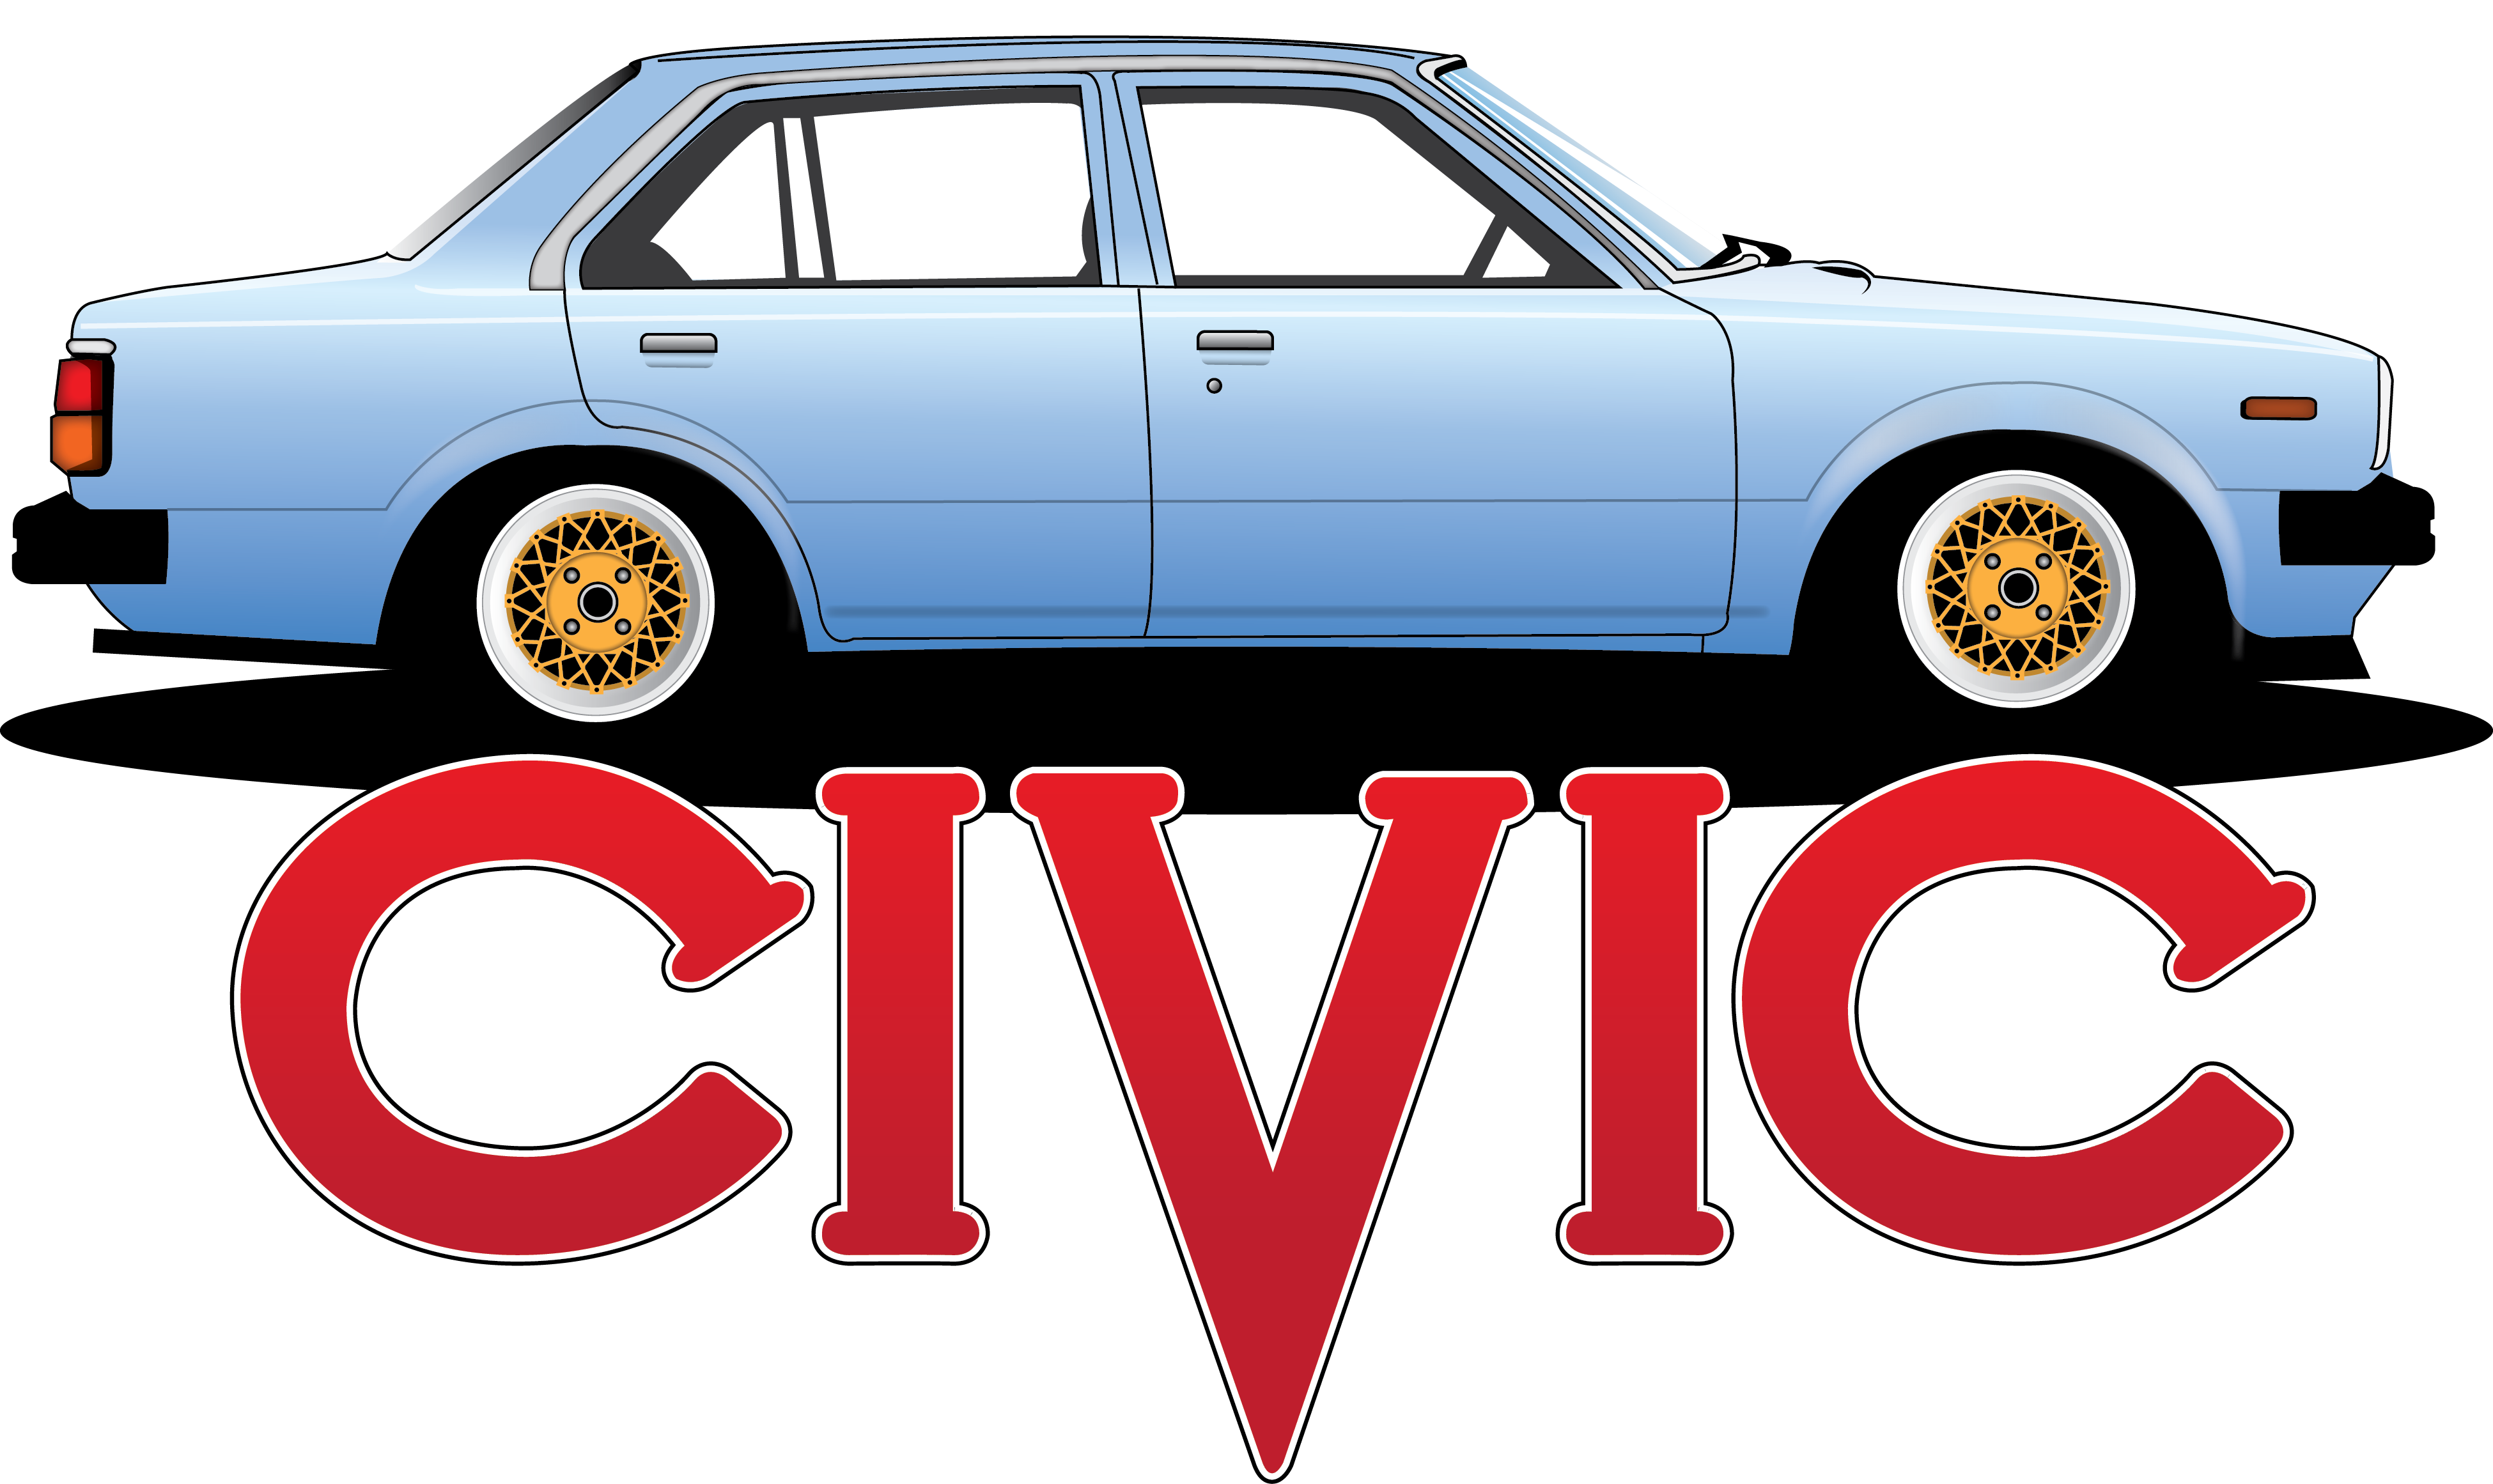 2G Civic Sedan